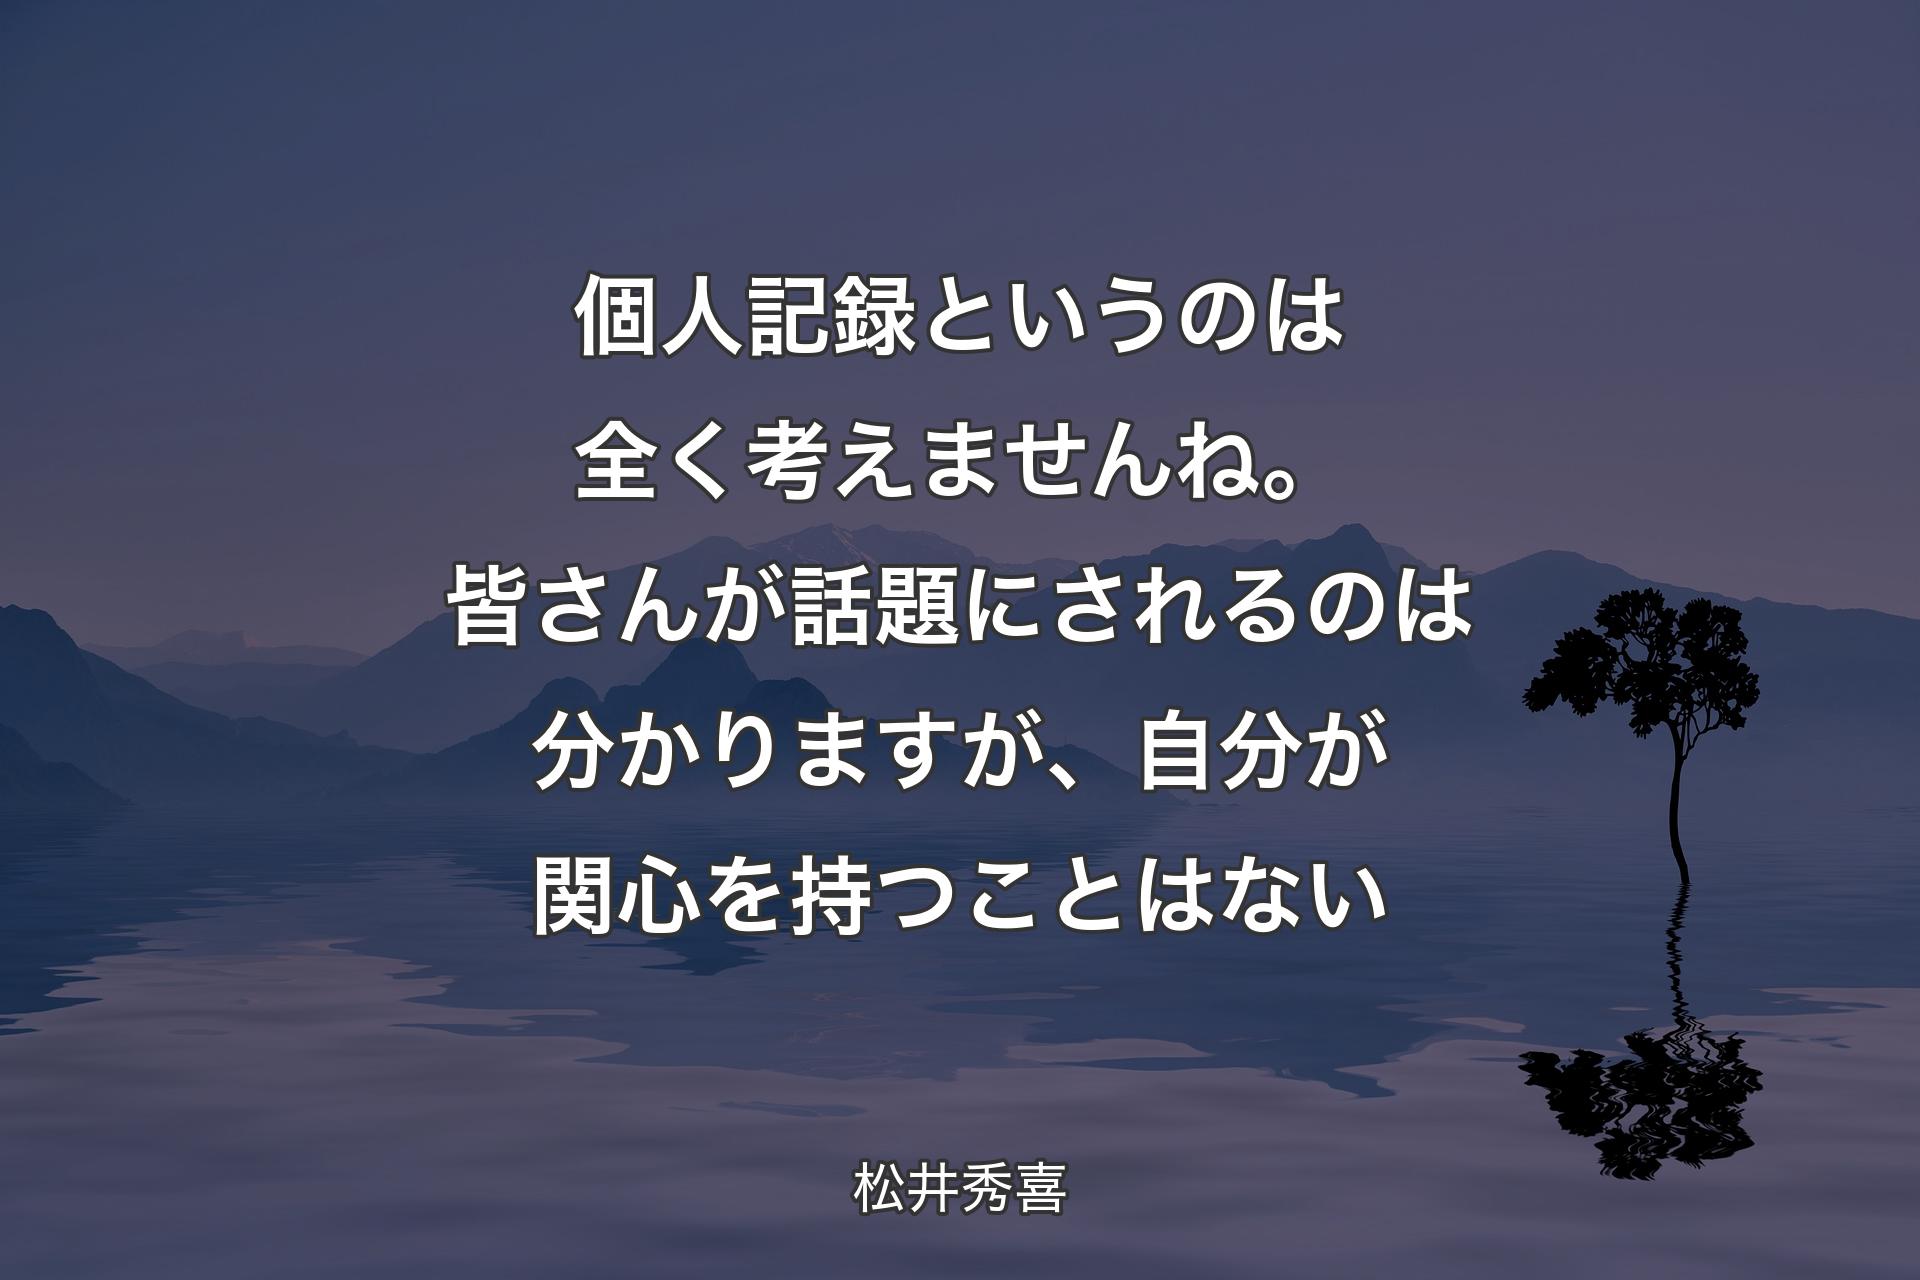 【背景4】個人記録というのは全く考えませんね。皆さんが話題にされるのは分かりますが、自分が関心を持つことはない - 松井秀喜